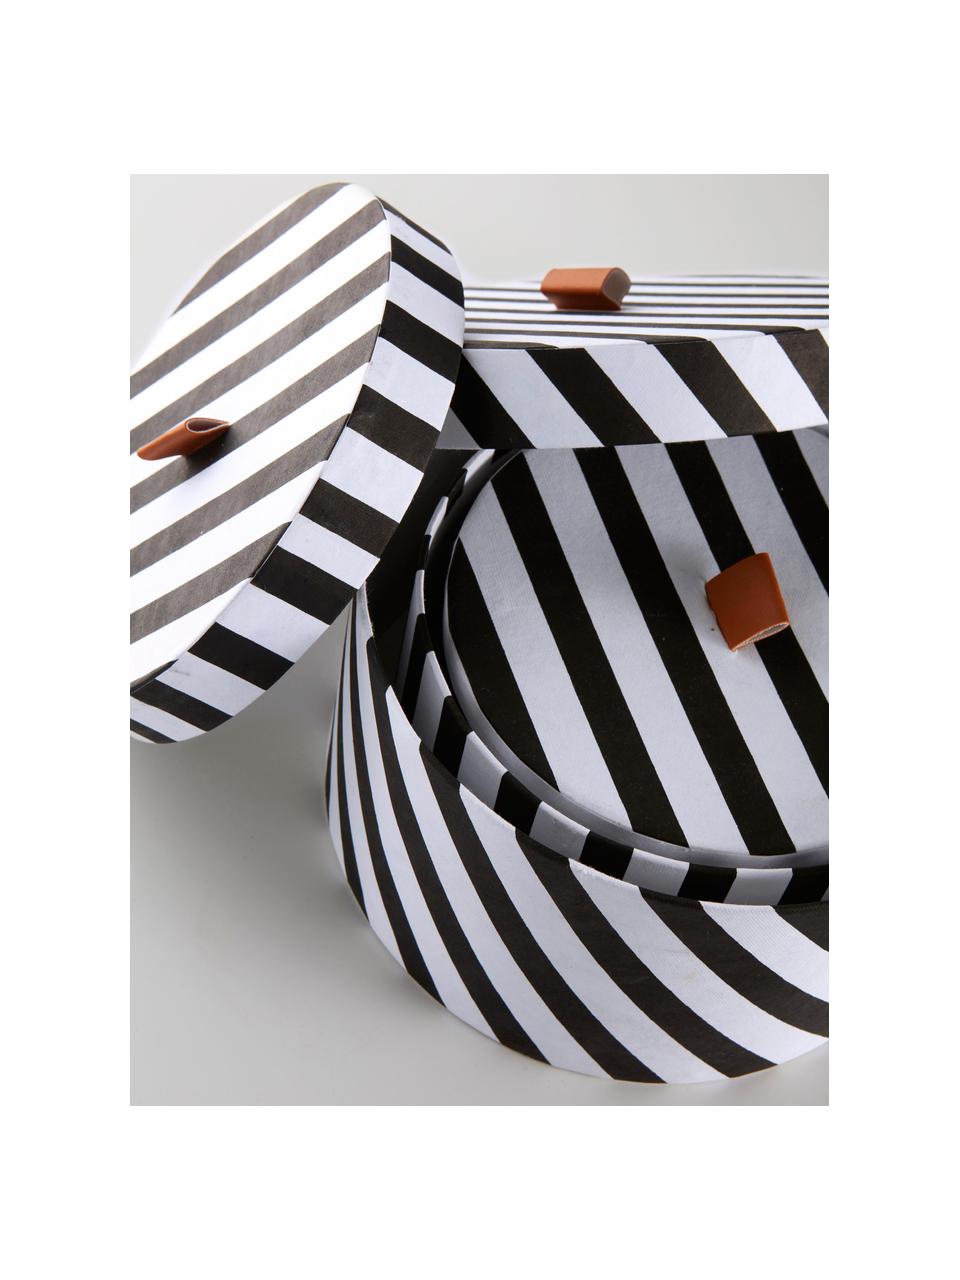 Set de cajas Dizzy, 3 pzas., Cartón, Negro, blanco, marrón, Set de diferentes tamaños